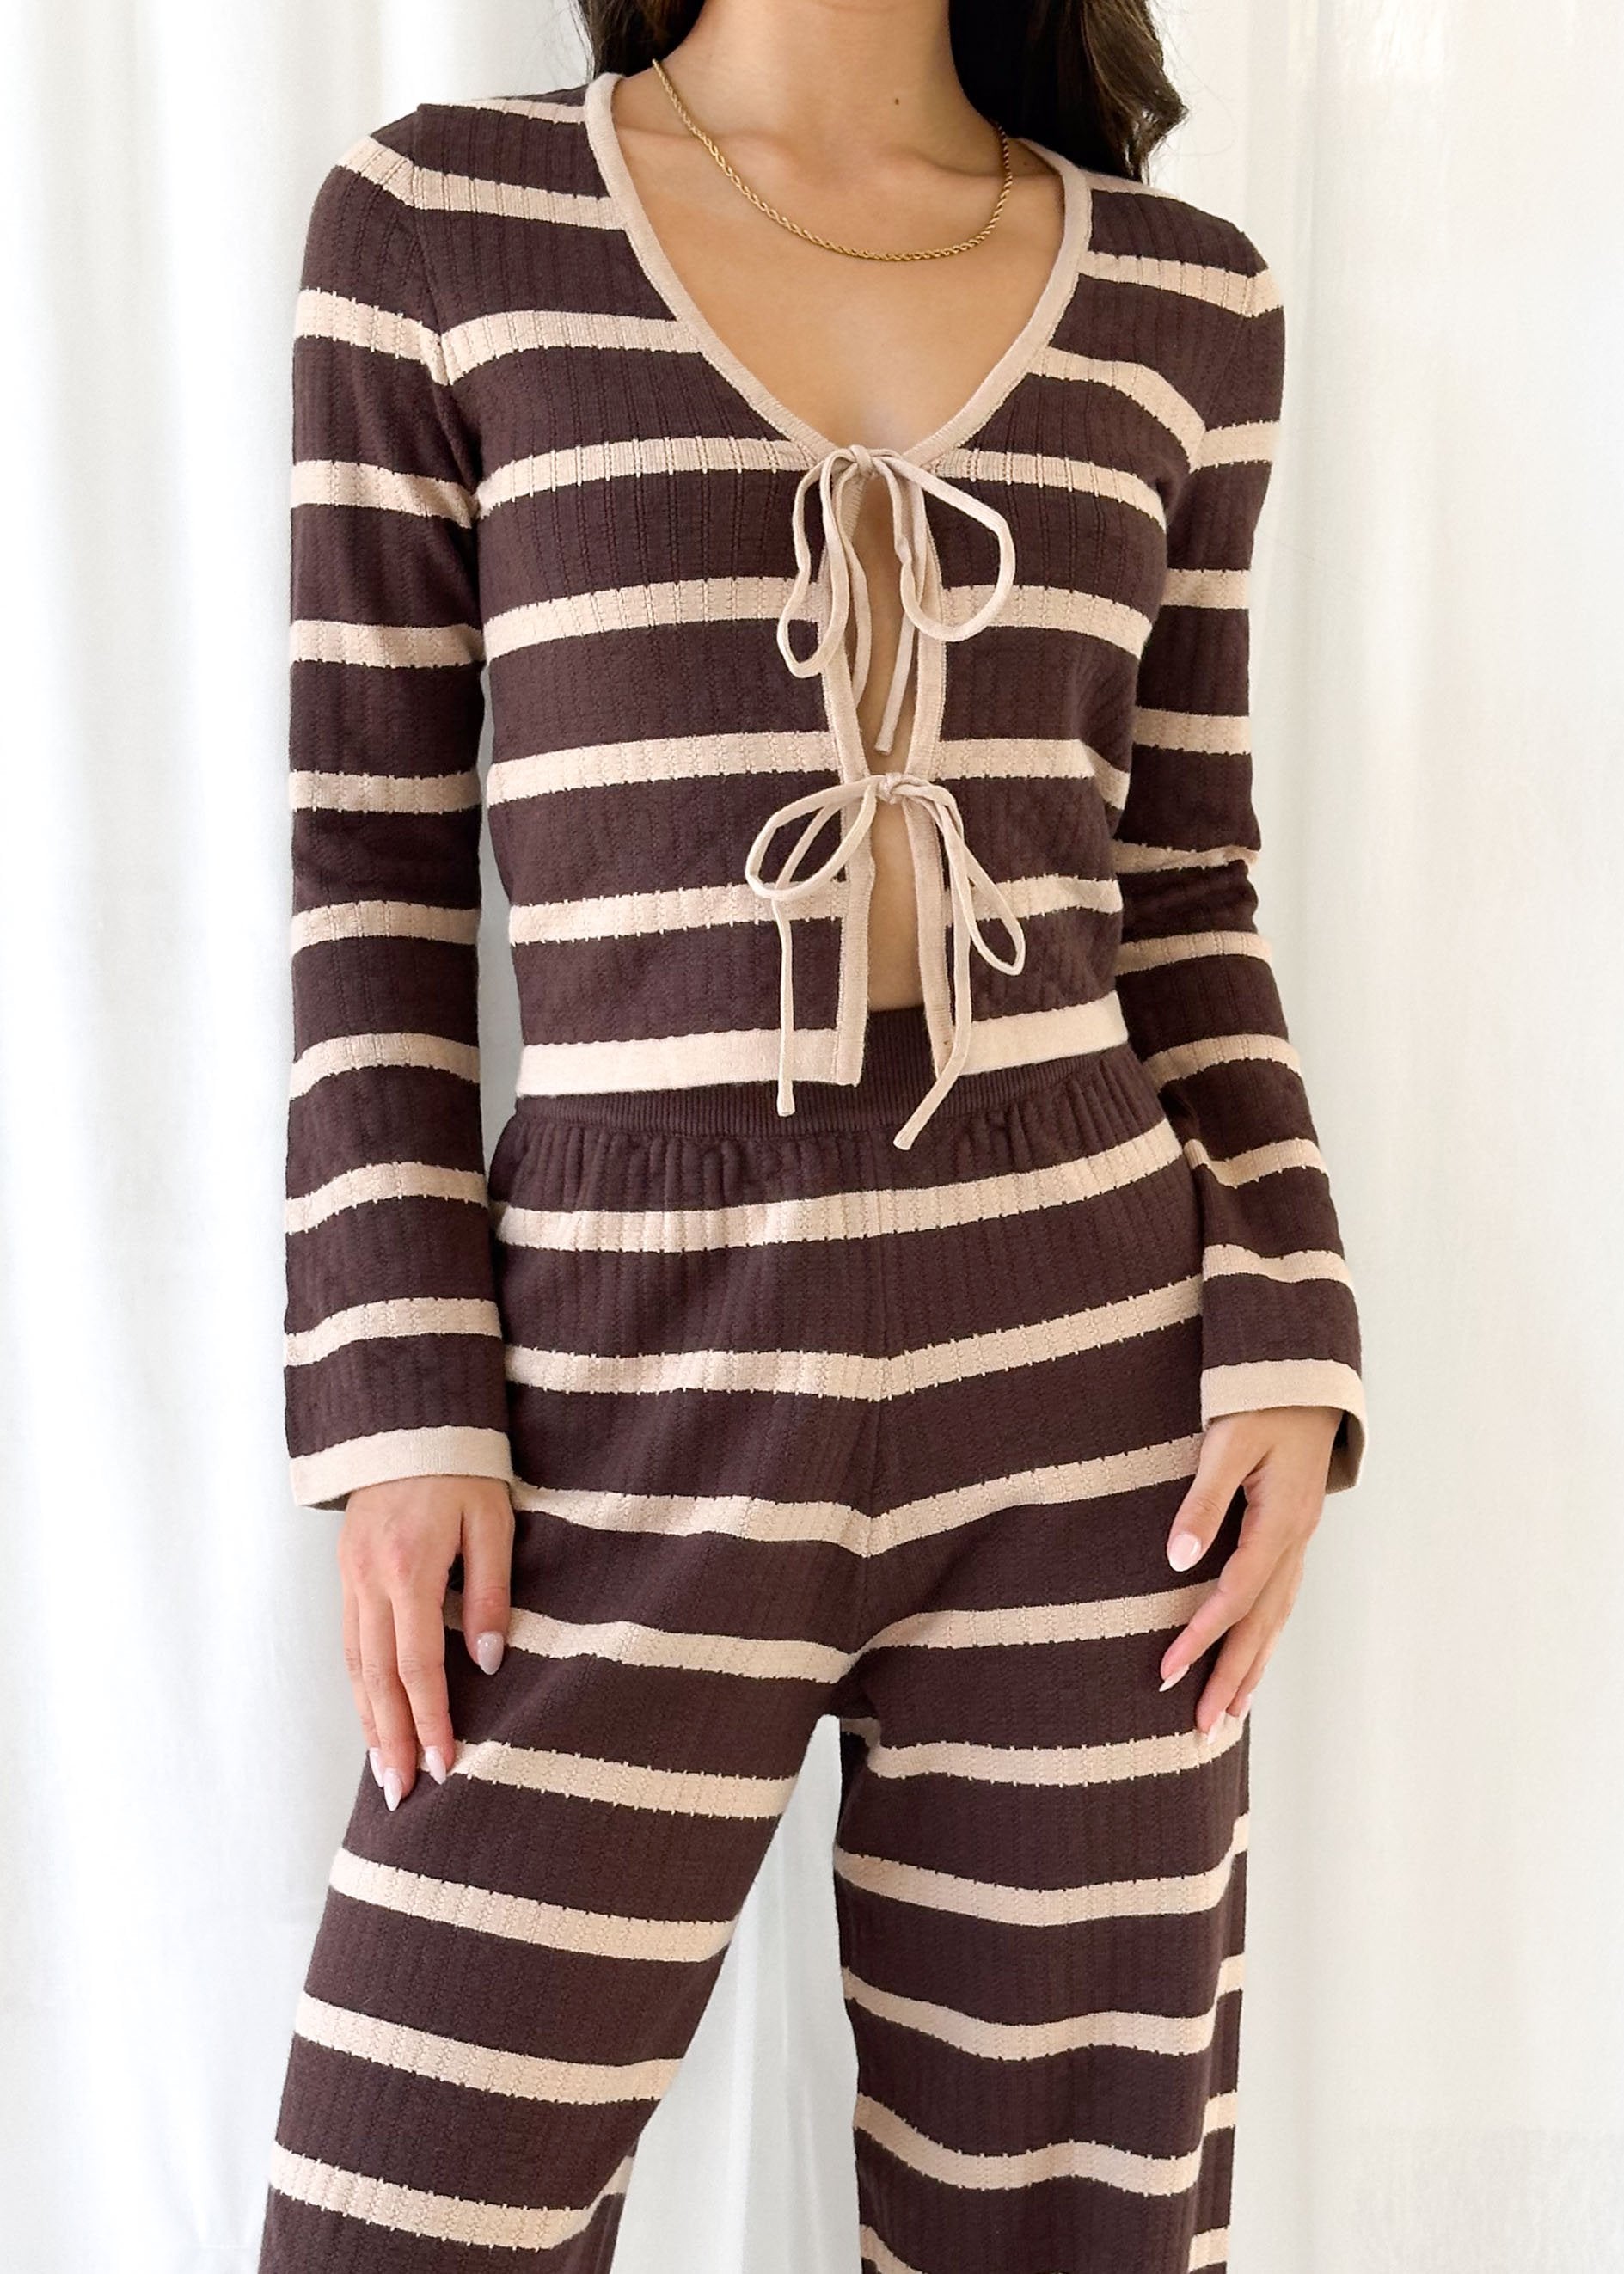 Rayla Knit Pants - Choc Stripe